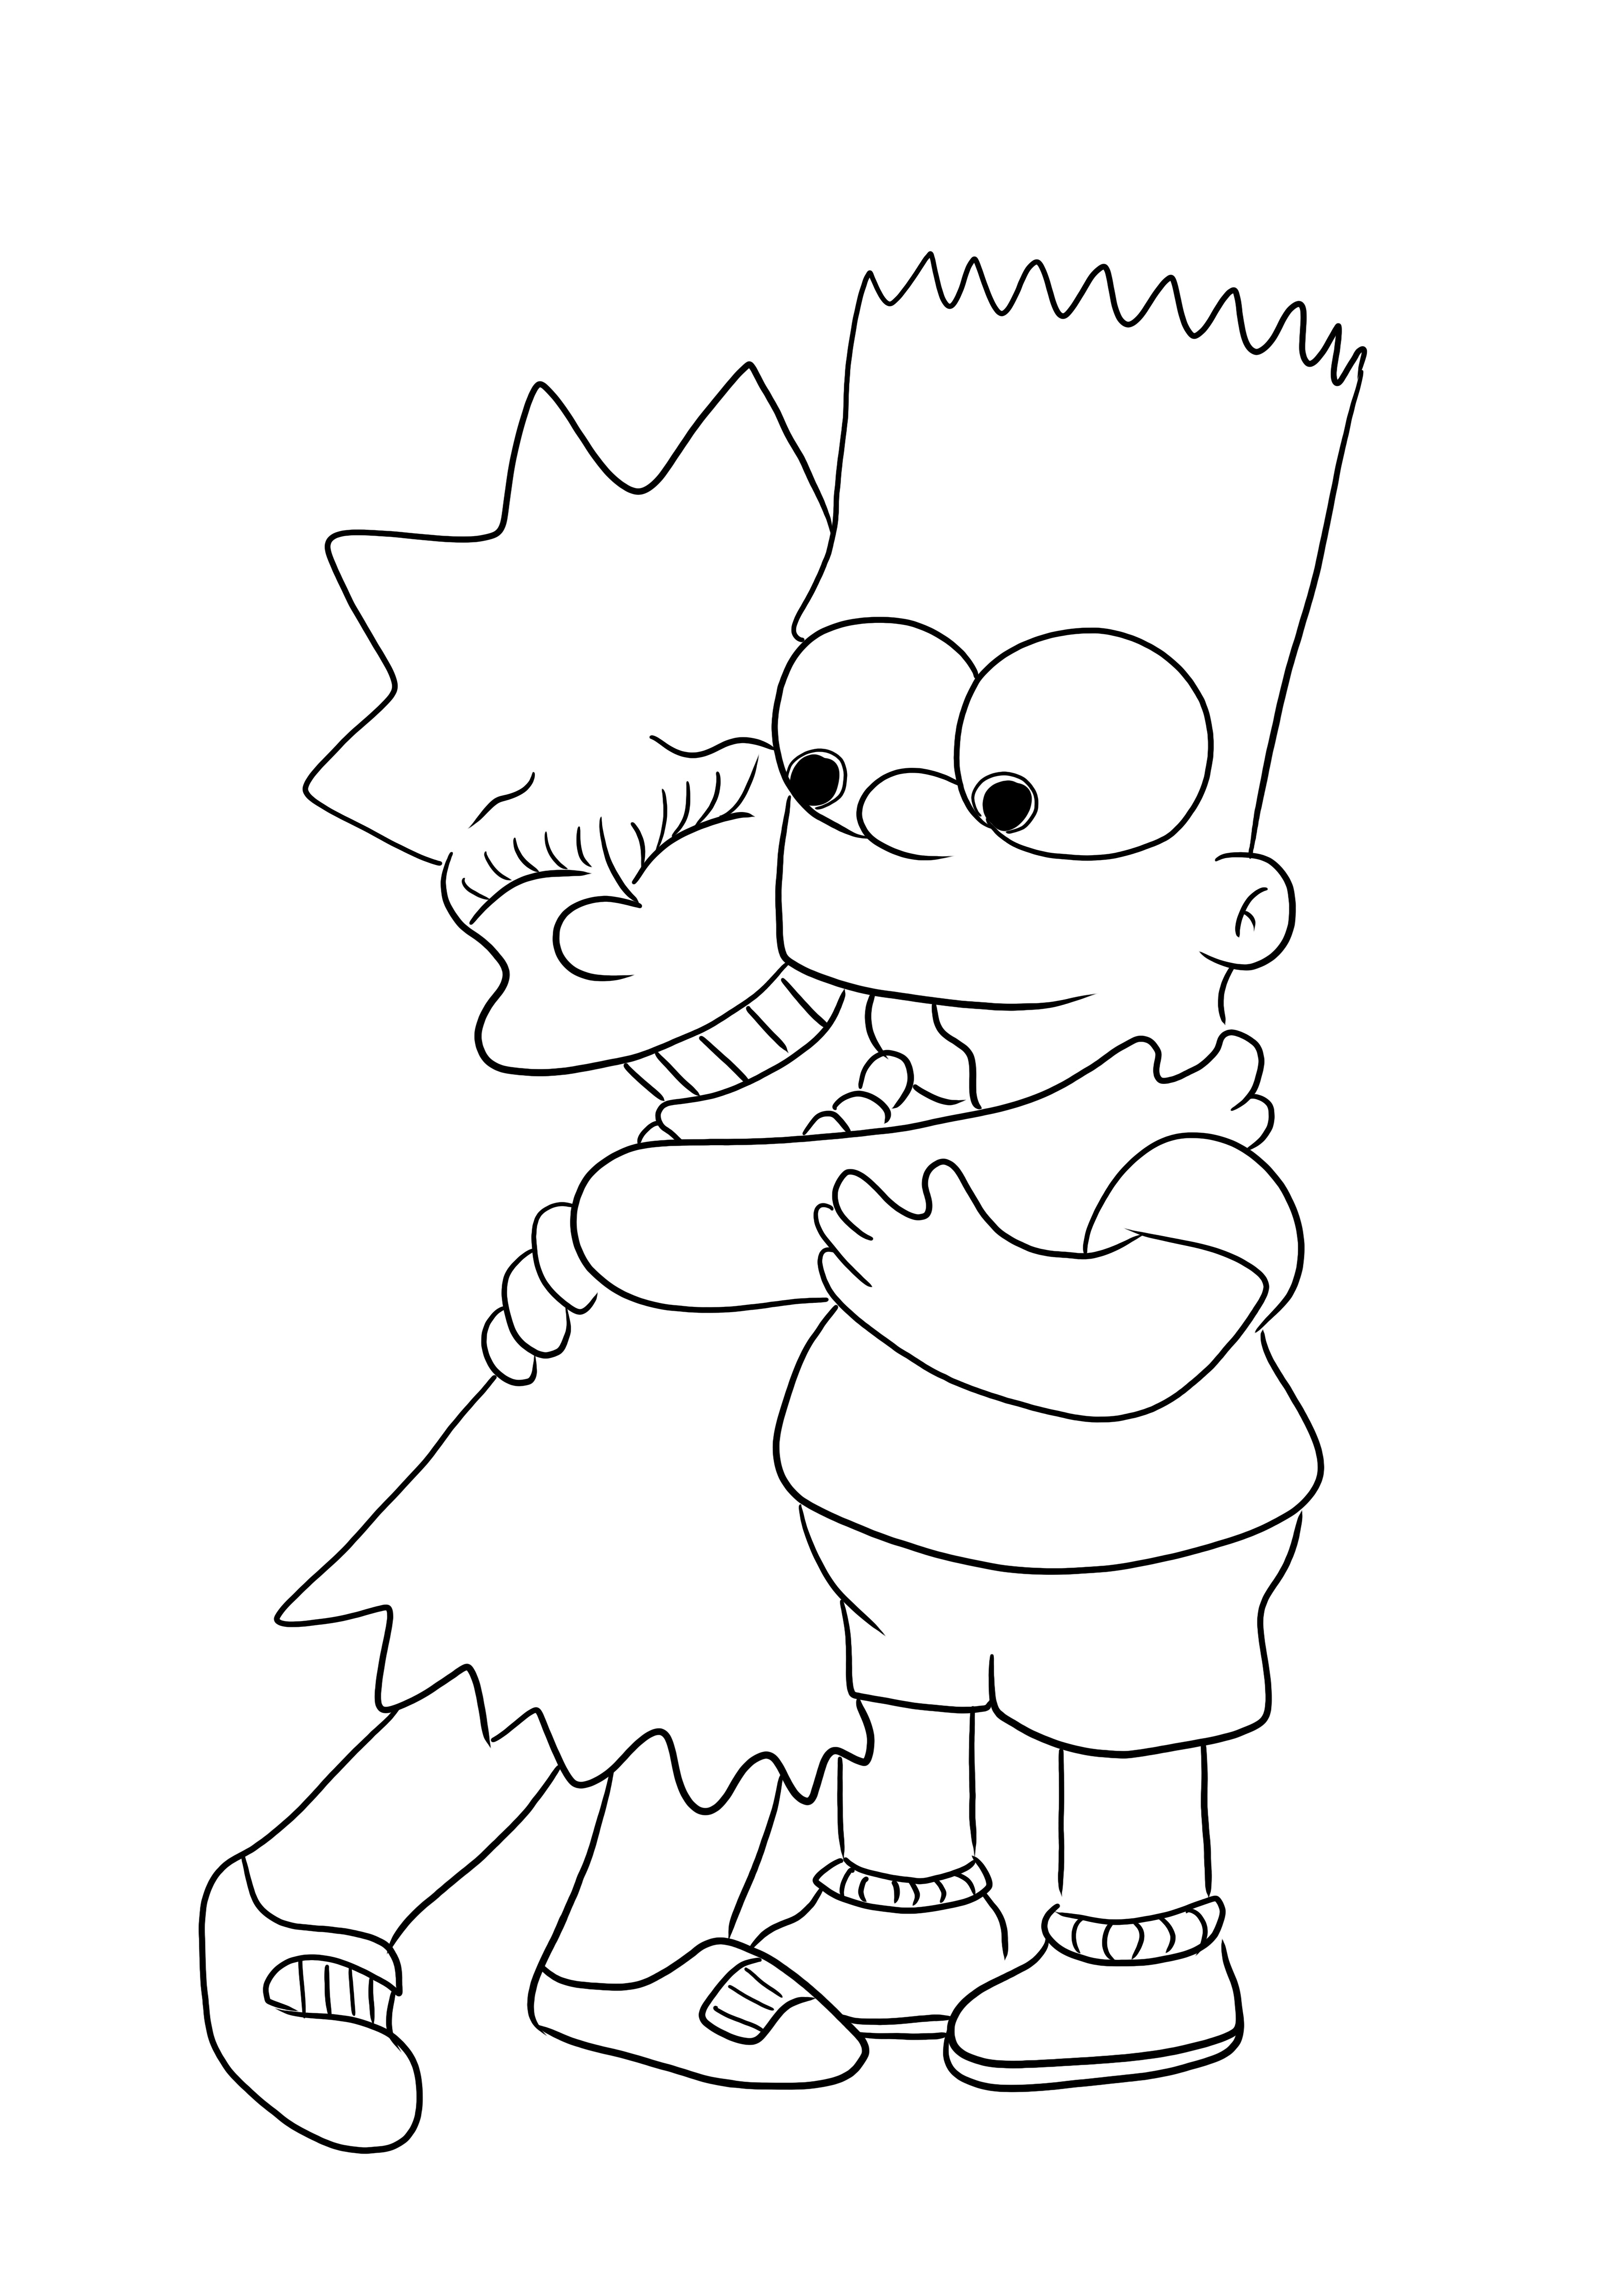 Uma imagem para colorir gratuita de Bart e Lisa da família Simpsons para imprimir para crianças